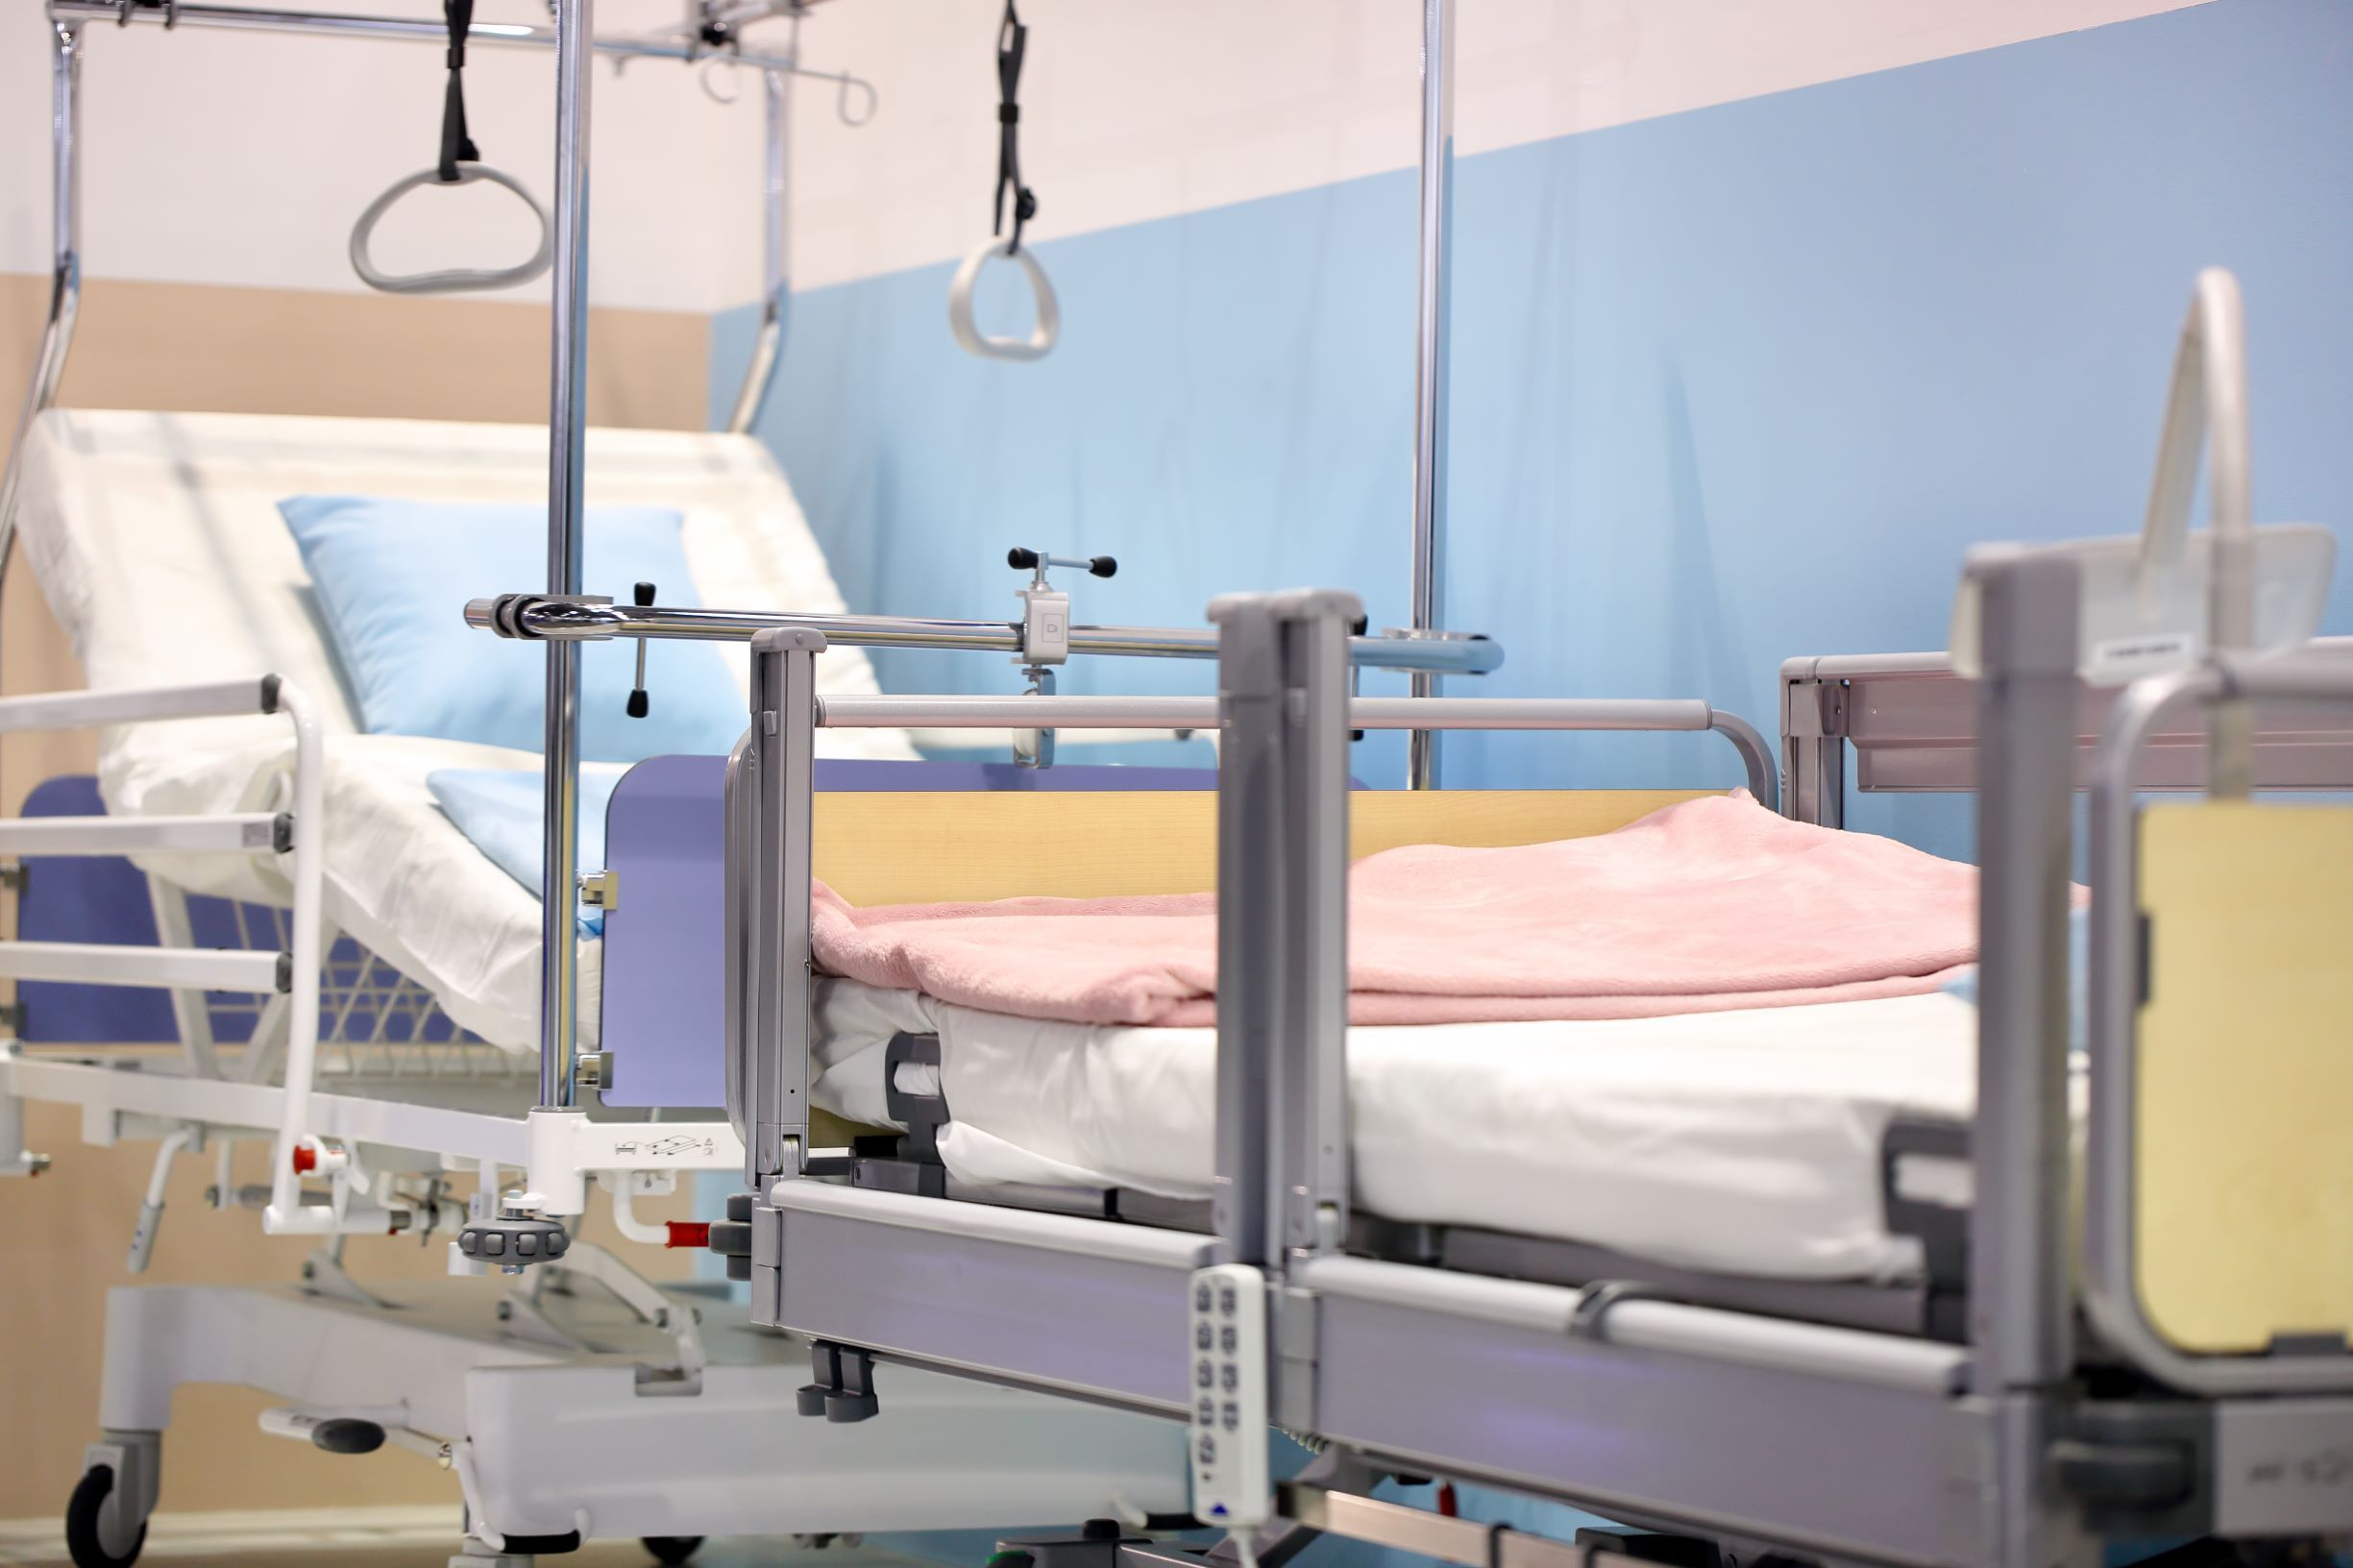 Podwojenie bazy łóżkowej i udogodnienia dla personelu medycznego